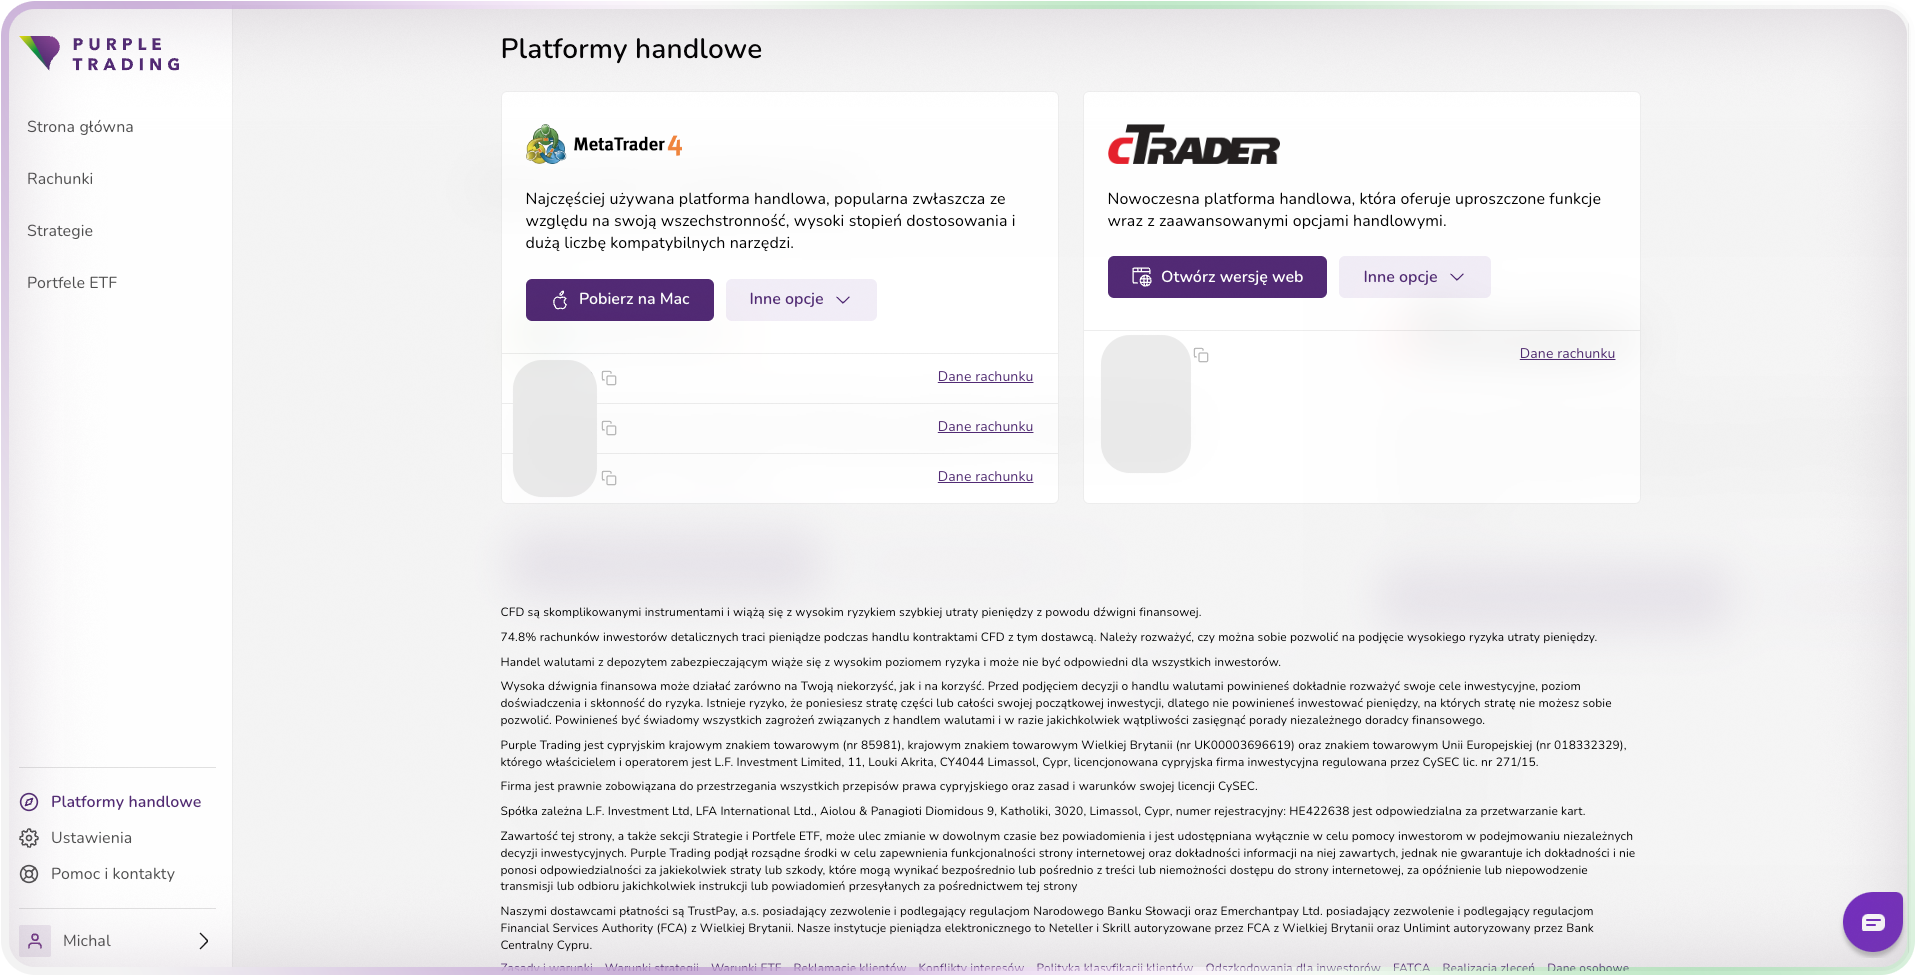 PurpleZone - platformy handlowe